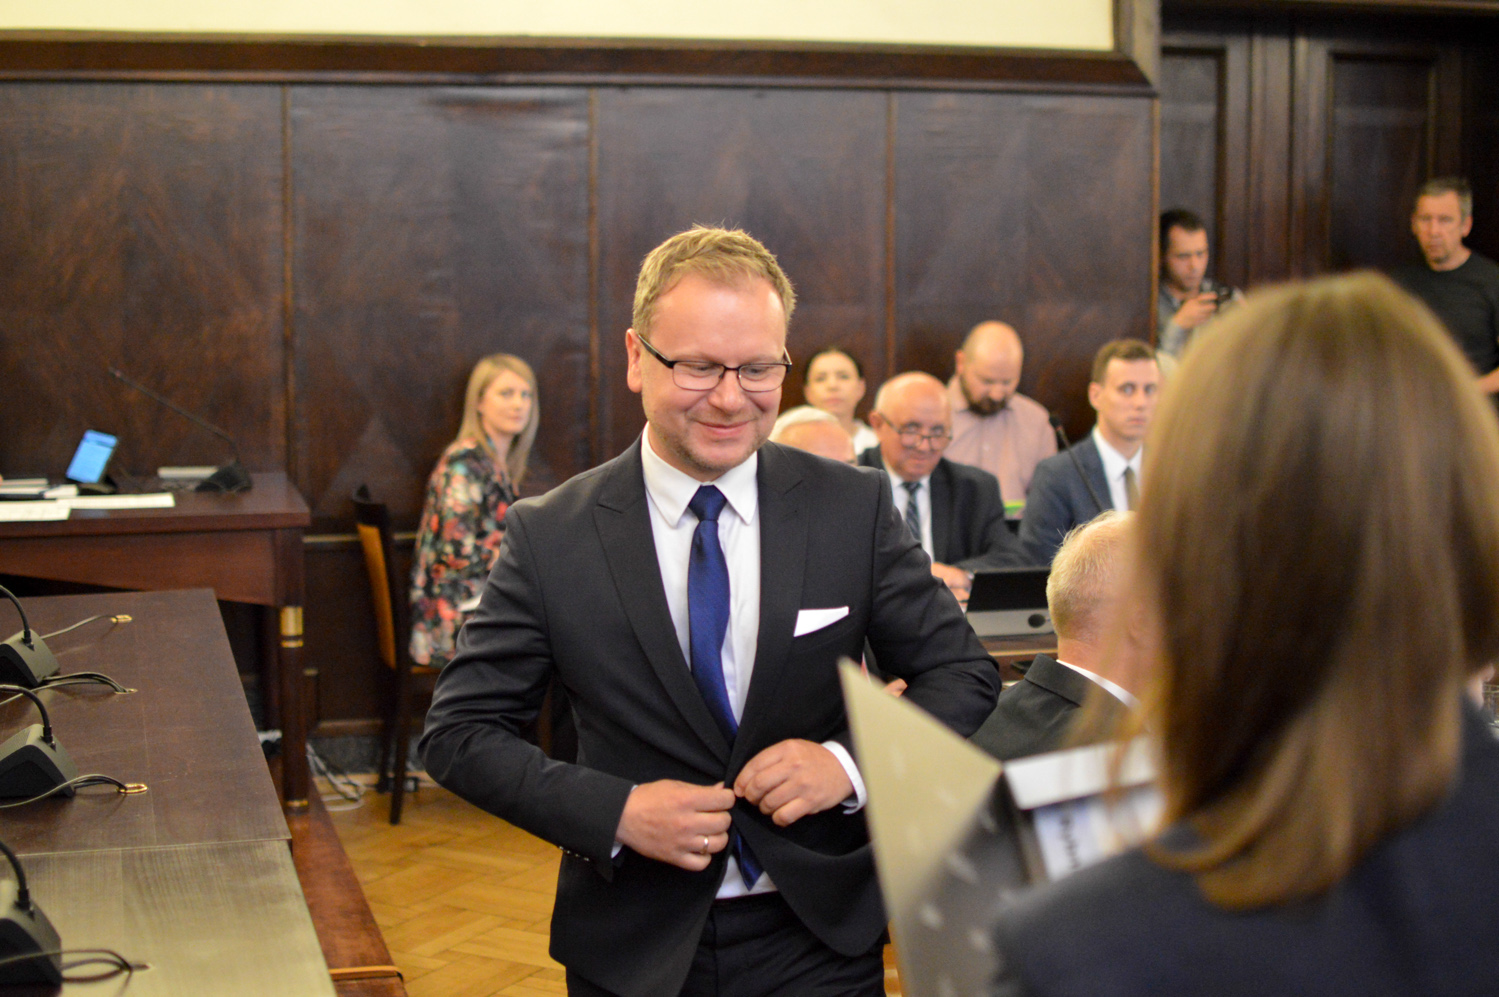 Radni opozycyjni dwukrotnie zgłosili kandydaturę Łukasza Kłoska (KO) na Przewodniczącego Rady Miasta, jednak ten dwa razy odmówił